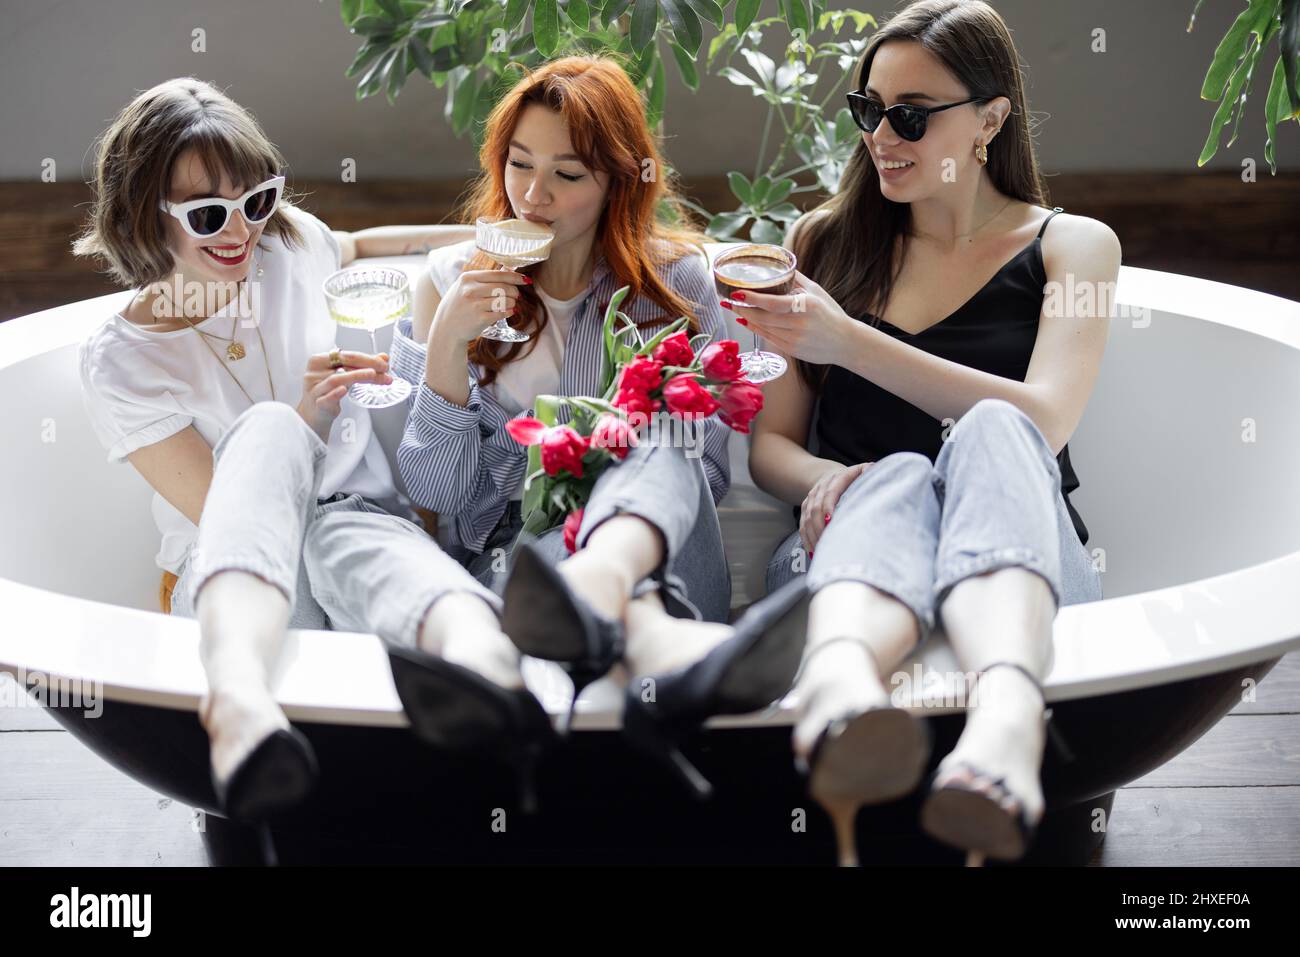 Trois jeunes amies adultes assises avec des boissons alcoolisées dans la baignoire, faisant une fête de poules ou célébrant les vacances des femmes à la maison Banque D'Images